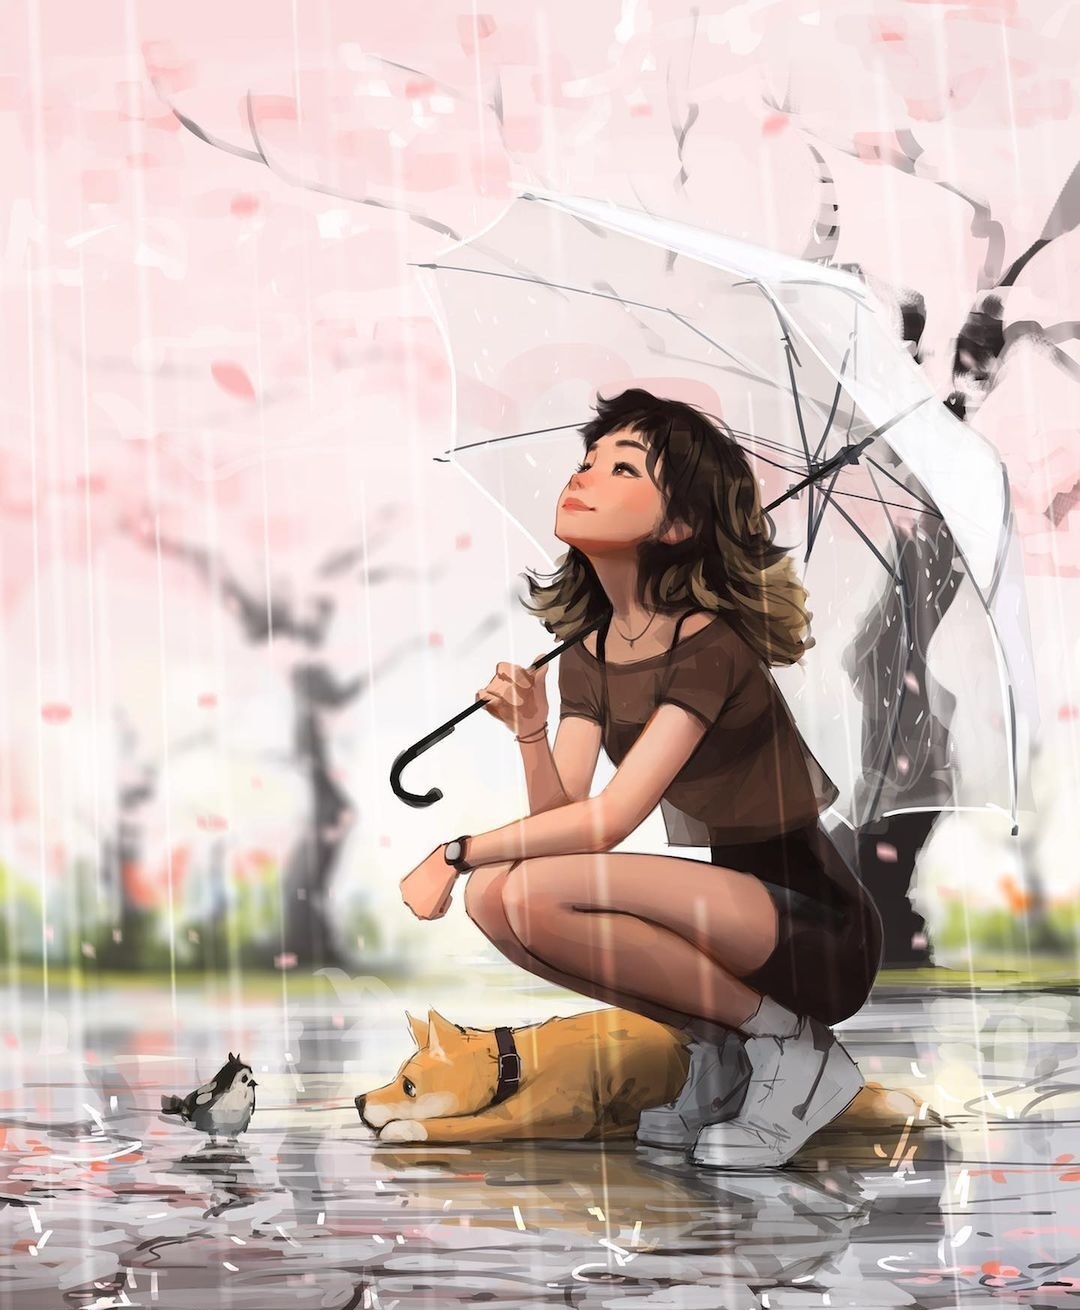 Enjoying the Rain by Sam Yang